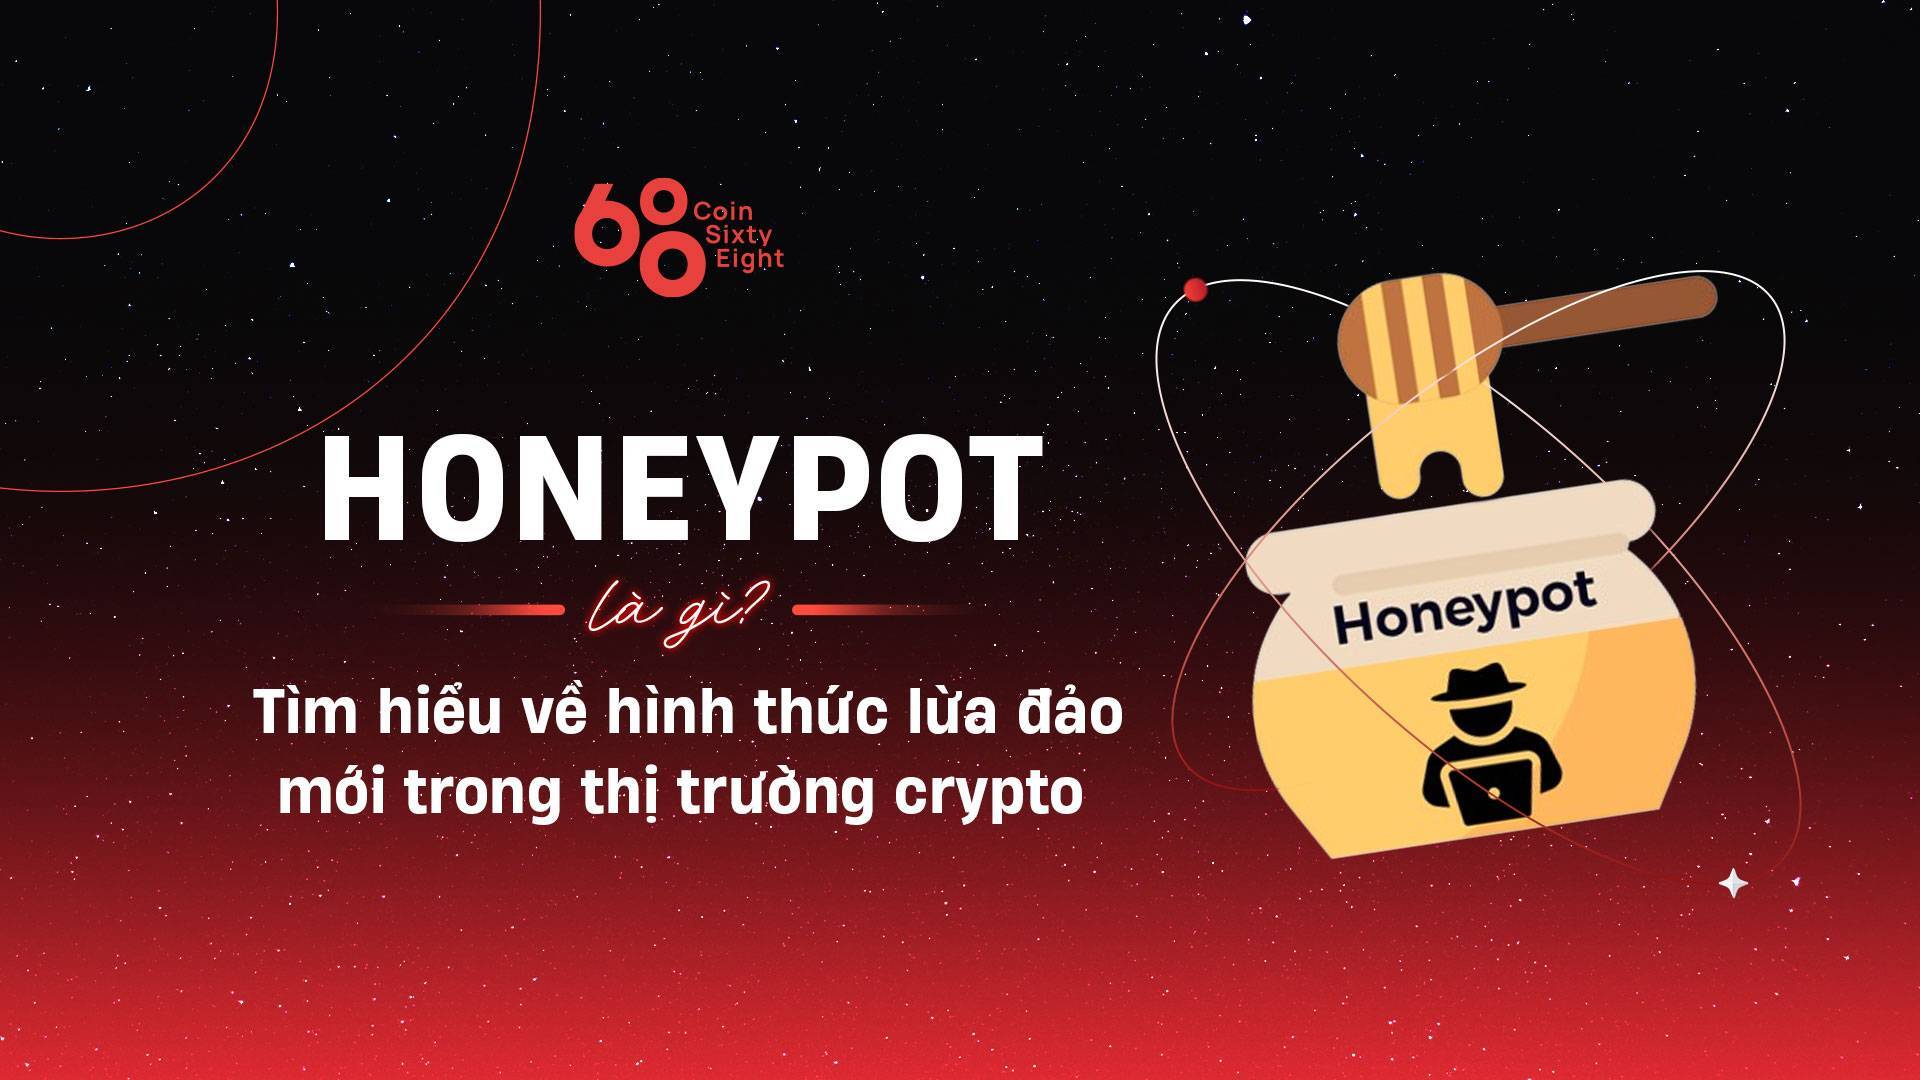 Honeypot Là Gì Tìm Hiểu Về Hình Thức Lừa Đảo Mới Trong Thị Trường Crypto